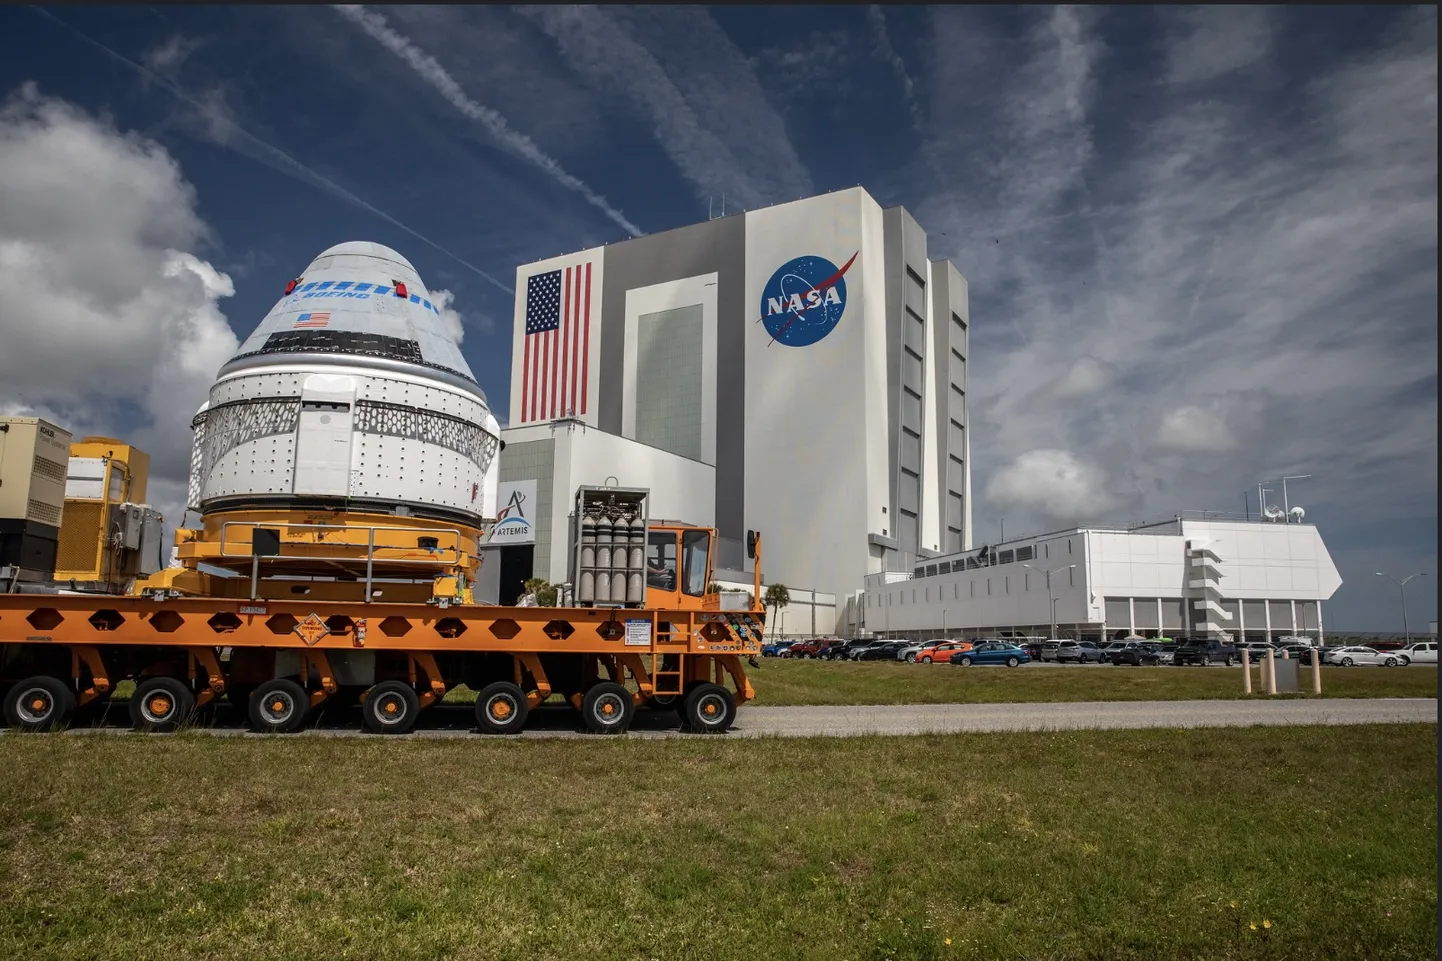 Starlineri kosmosesõiduk liikumas 2022. aastal NASA montaažiangaari.